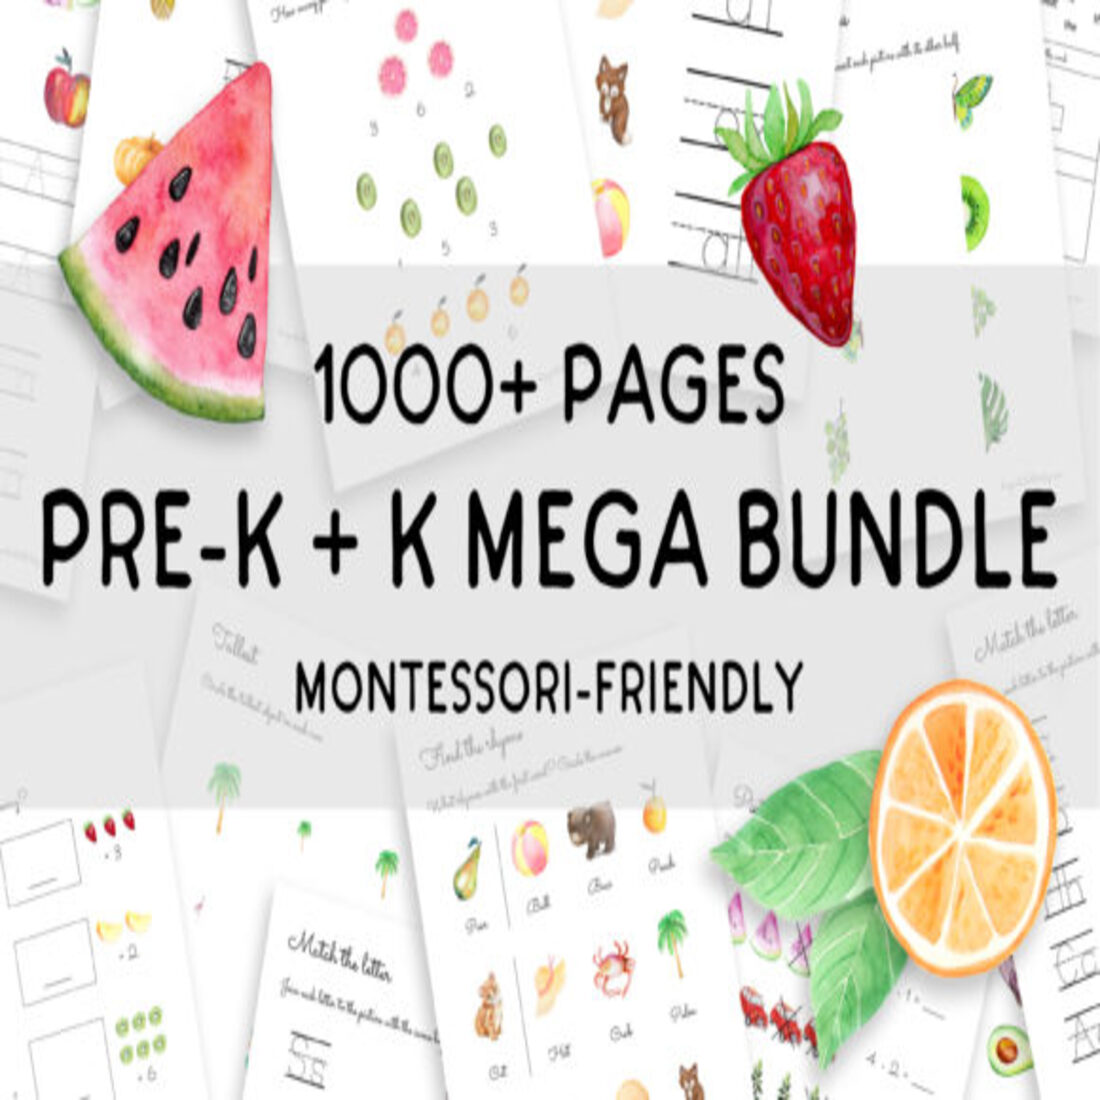 PreK K Learning MEGA BUNDLE 1000+ Pages cover image.